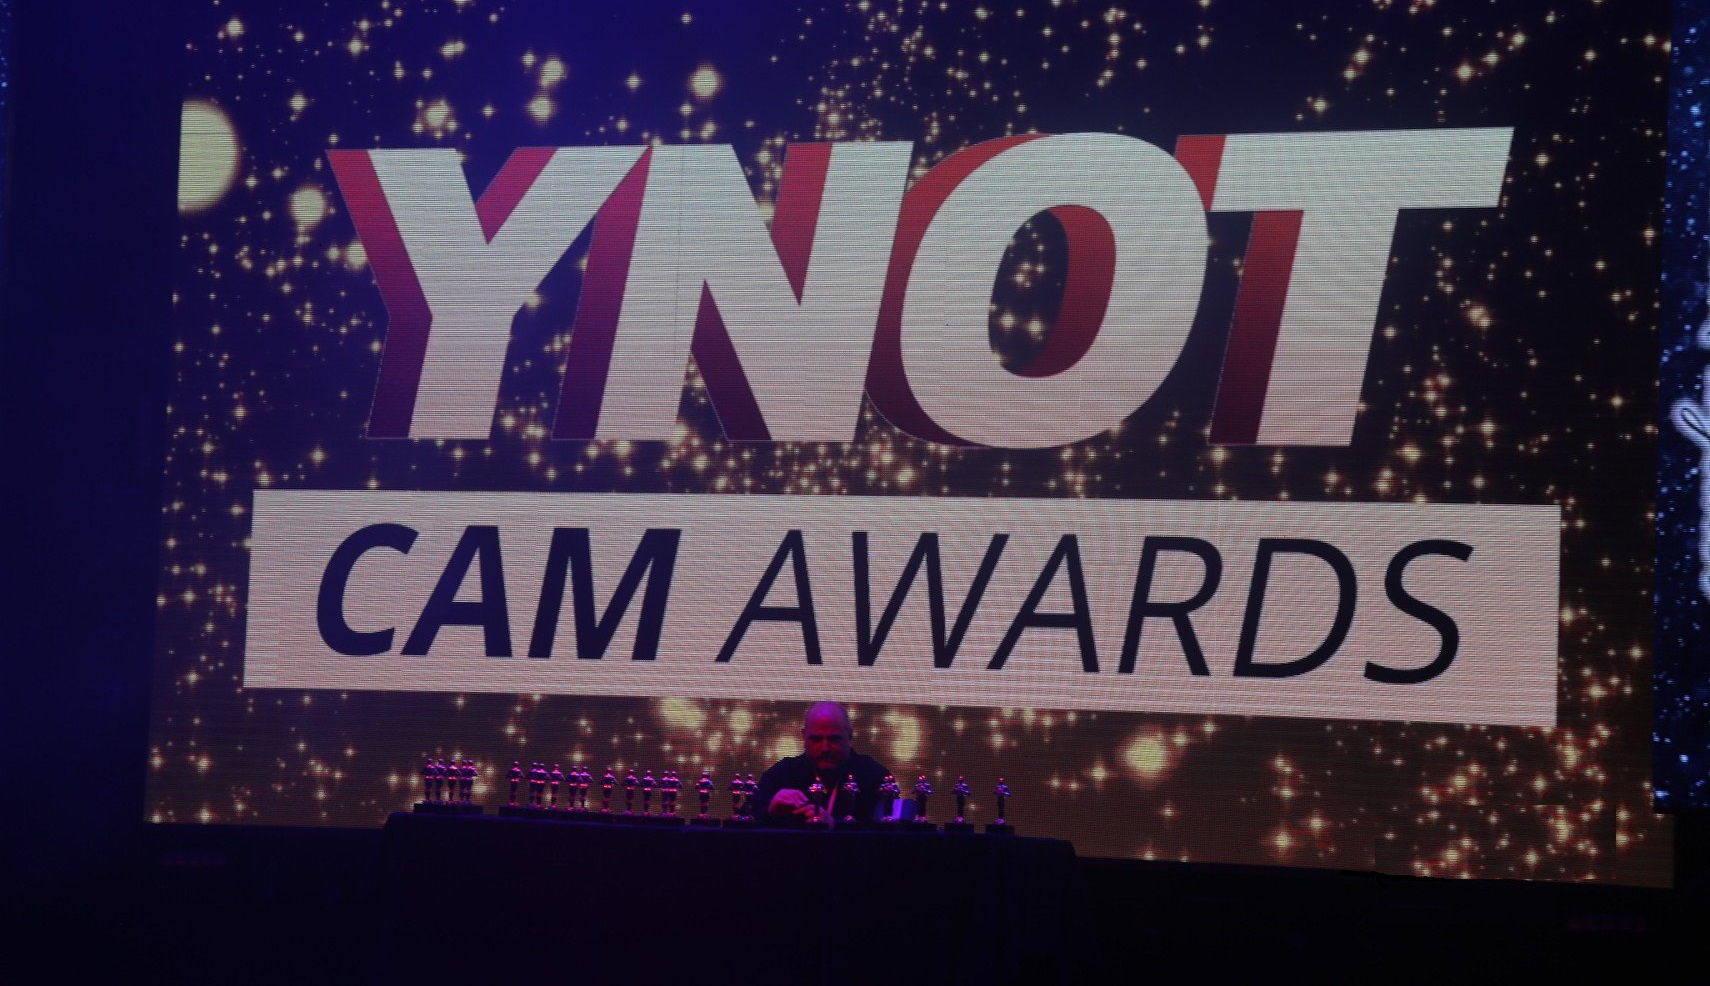 Ynot Cam Awards.jpg